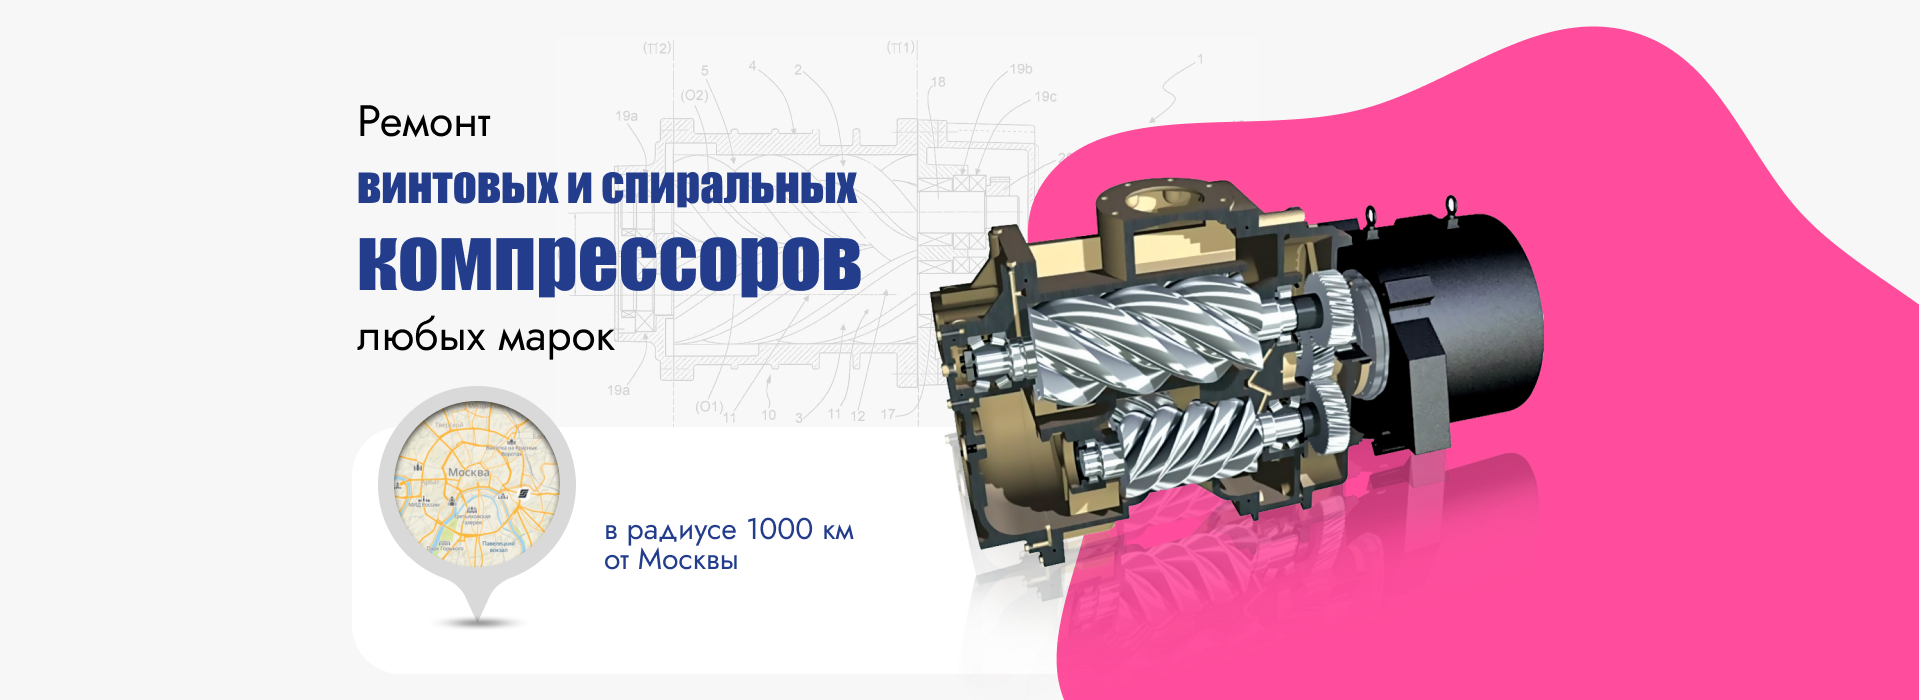 Ремонт винтовых и спиральных компрессоров любых марок в радиусе 1000 км от Москвы